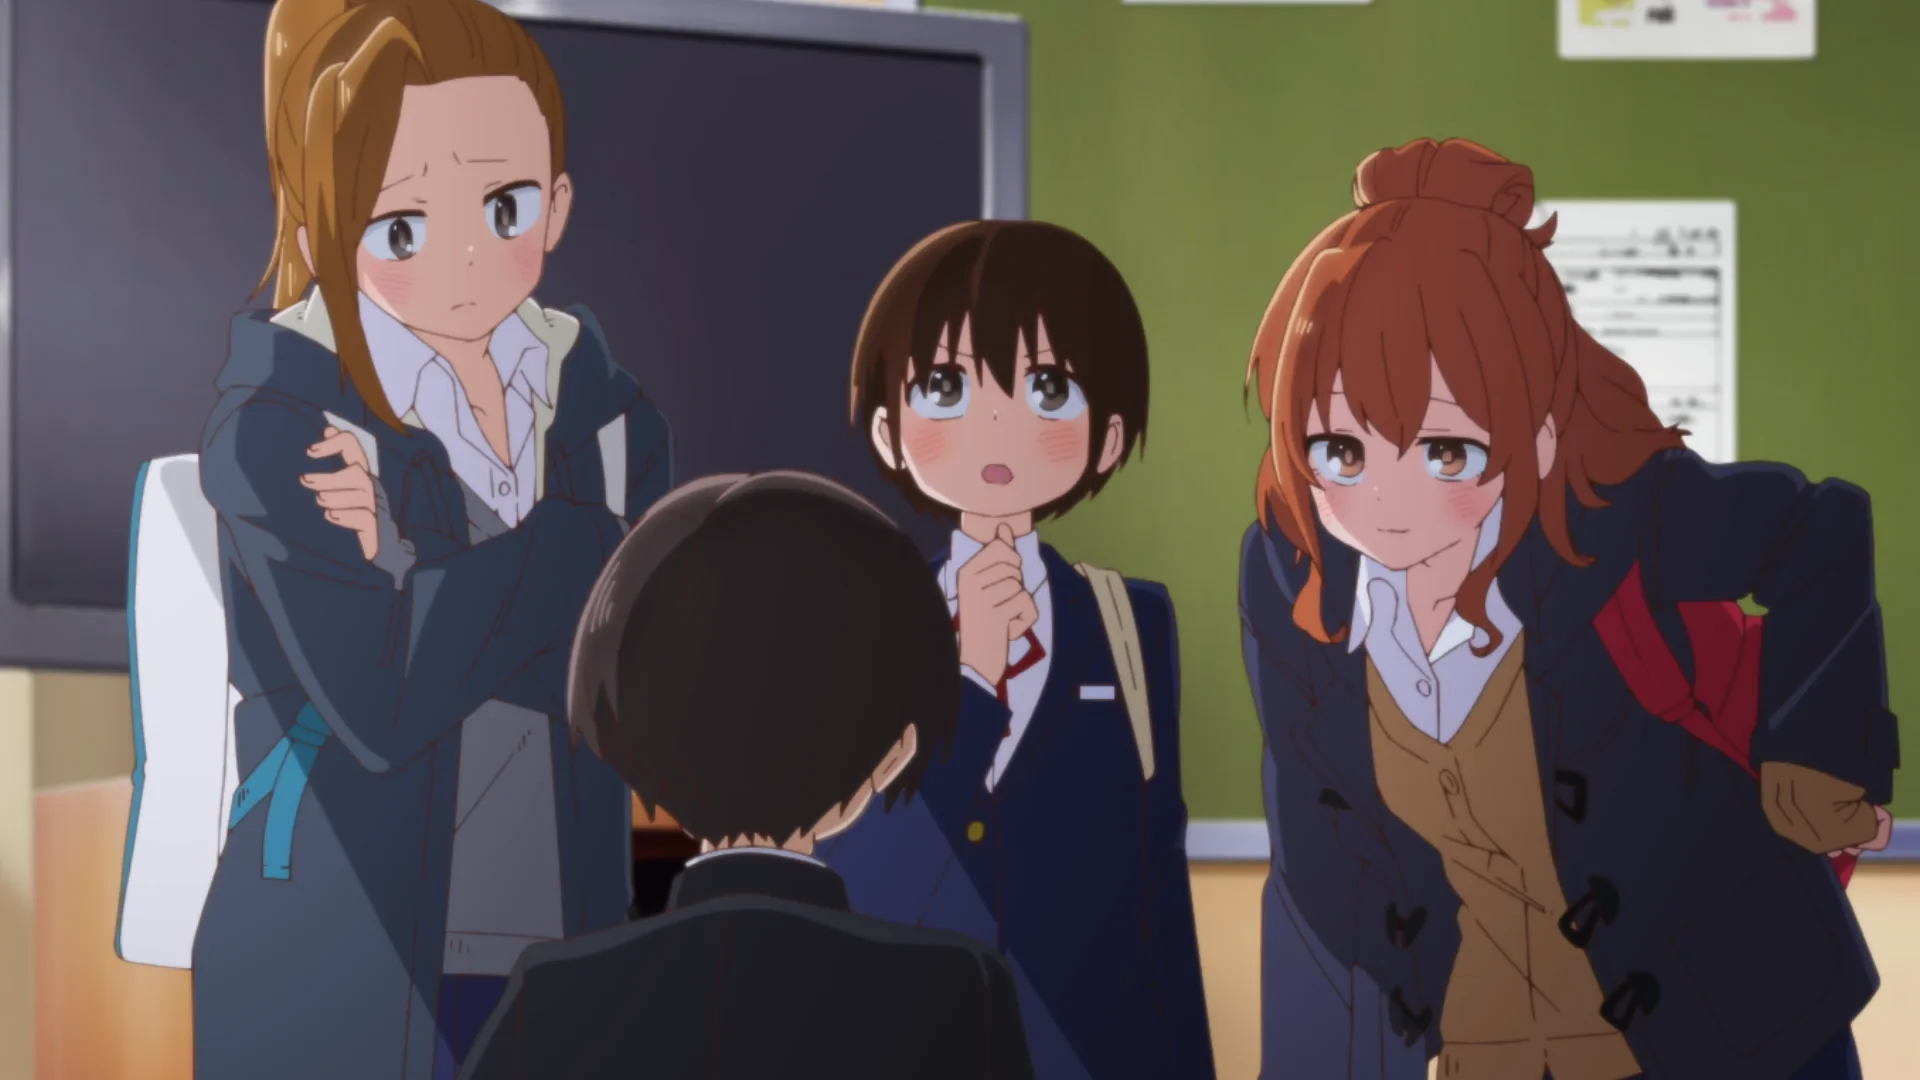 Serina, Kyoutarou, Chihiro, and Moeko